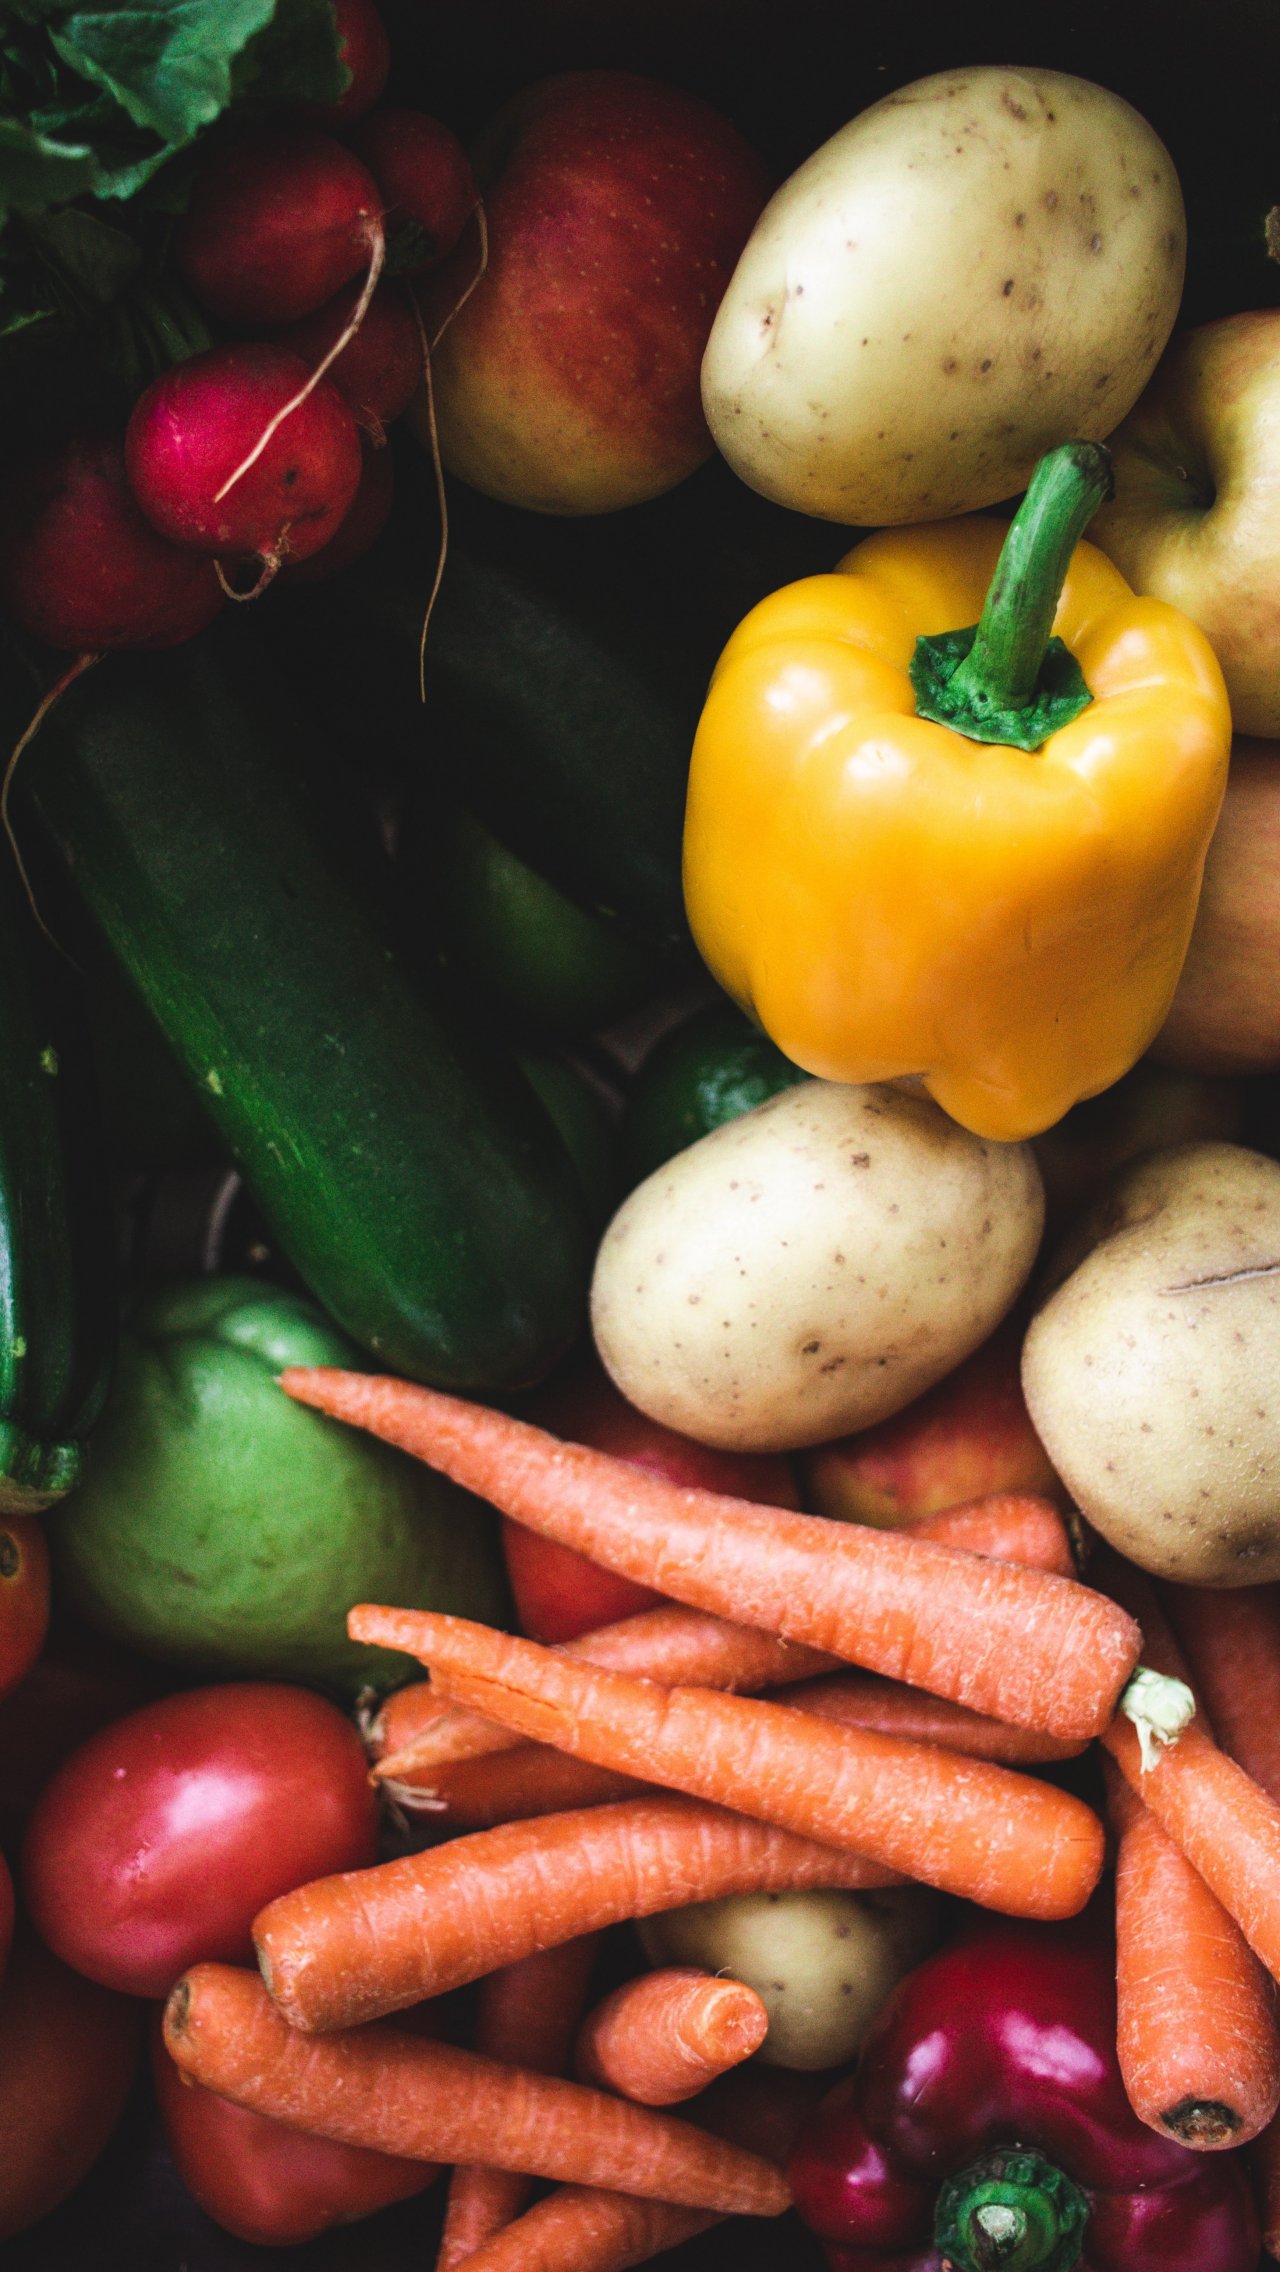 Сколько овощей нужно есть в день и почему?